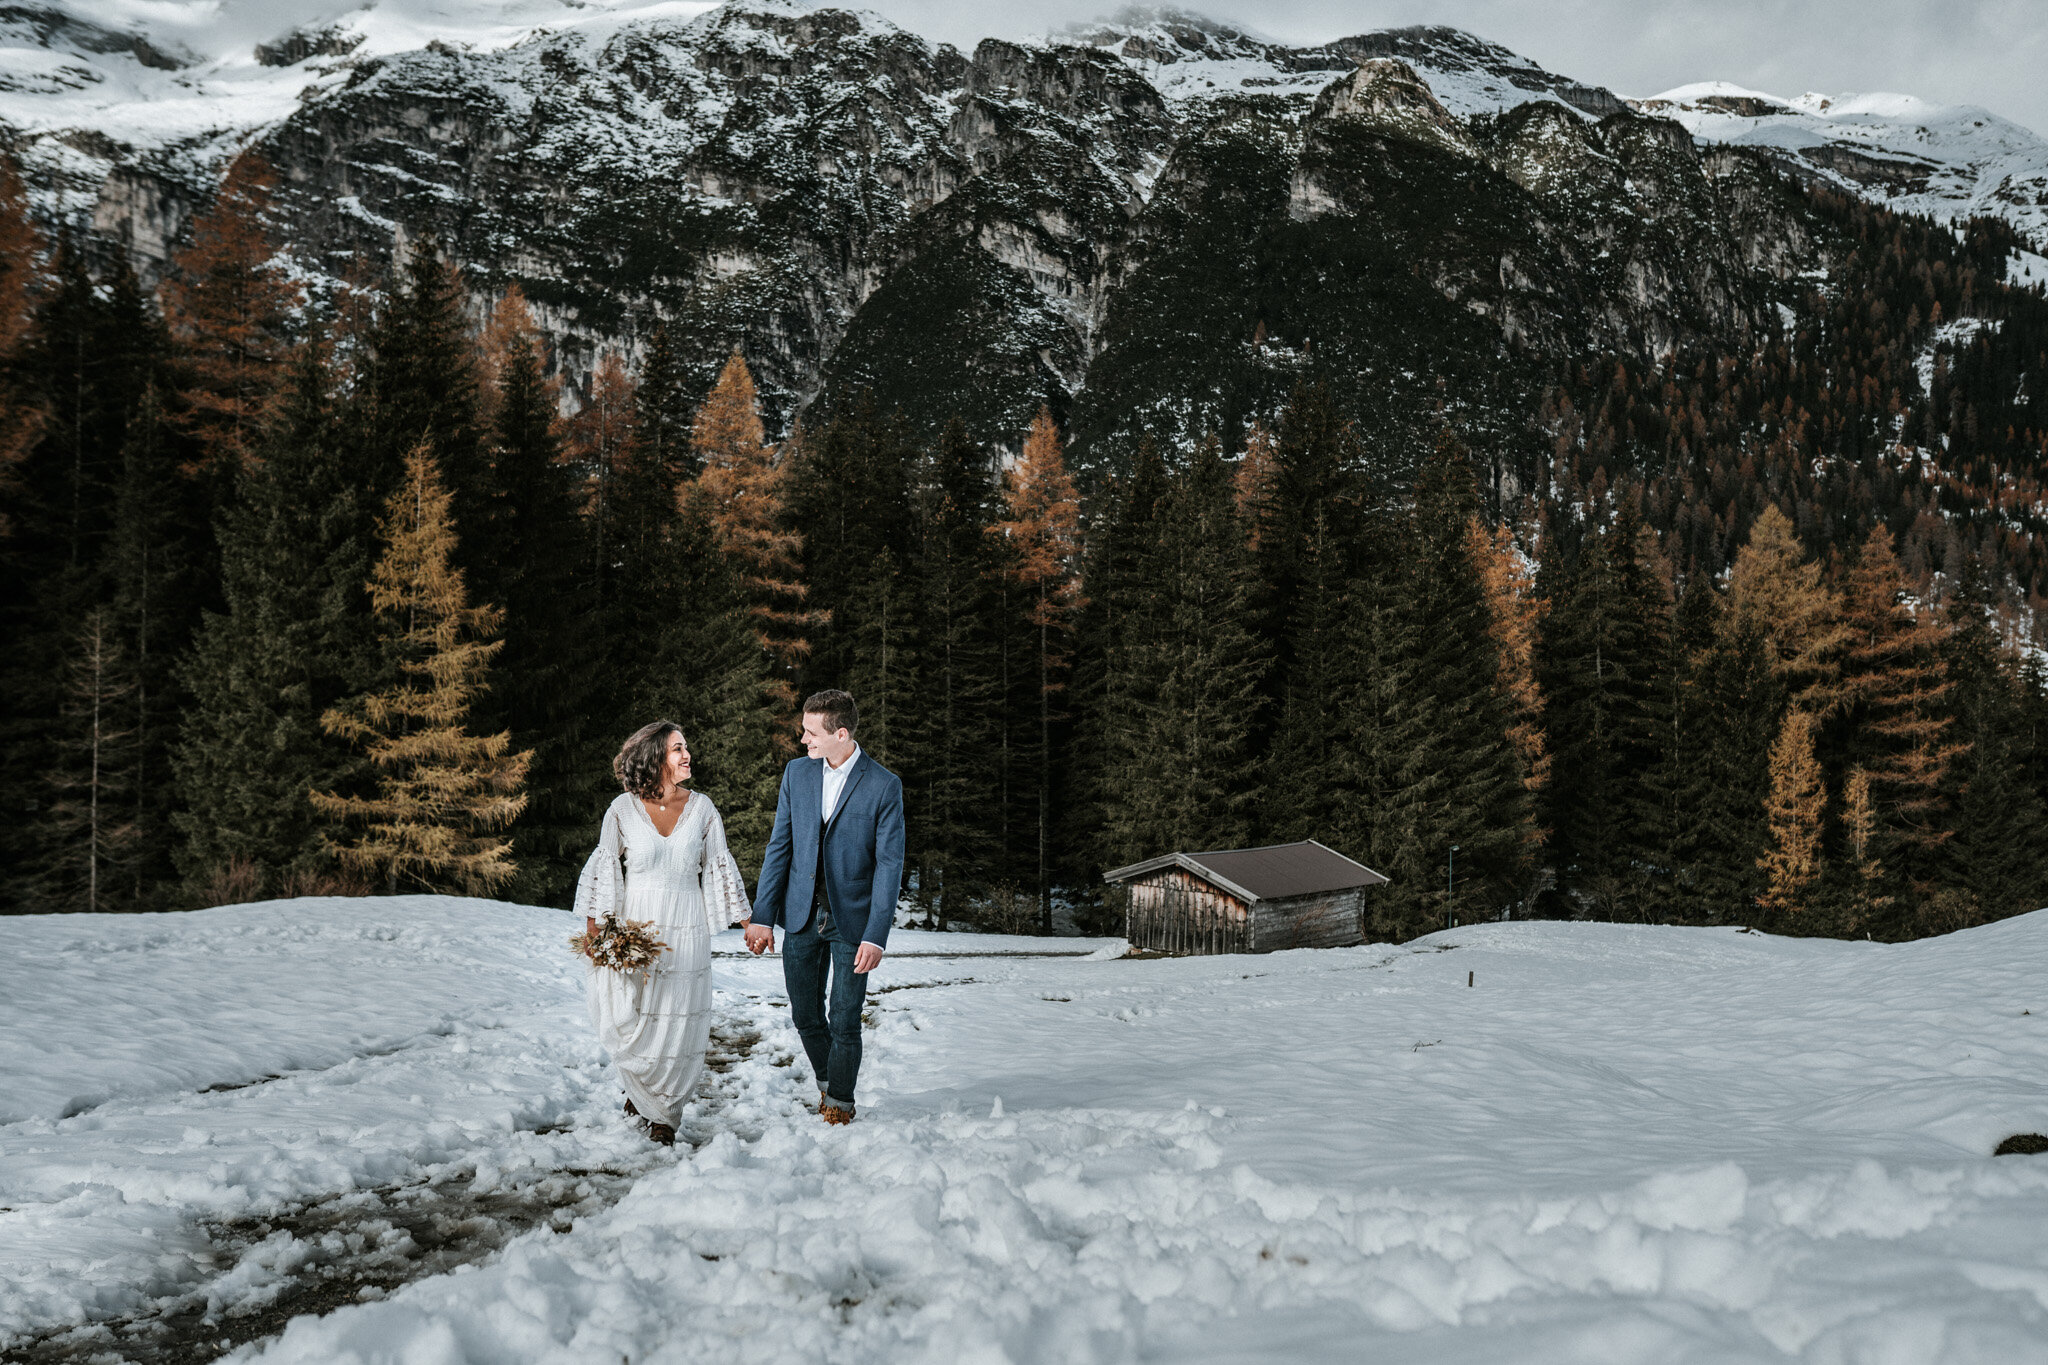 Christina-Biasi-Photography-Scheunenhochzeit-Tirol-Hochzeitsfotograf-5_LR edited_web.jpg